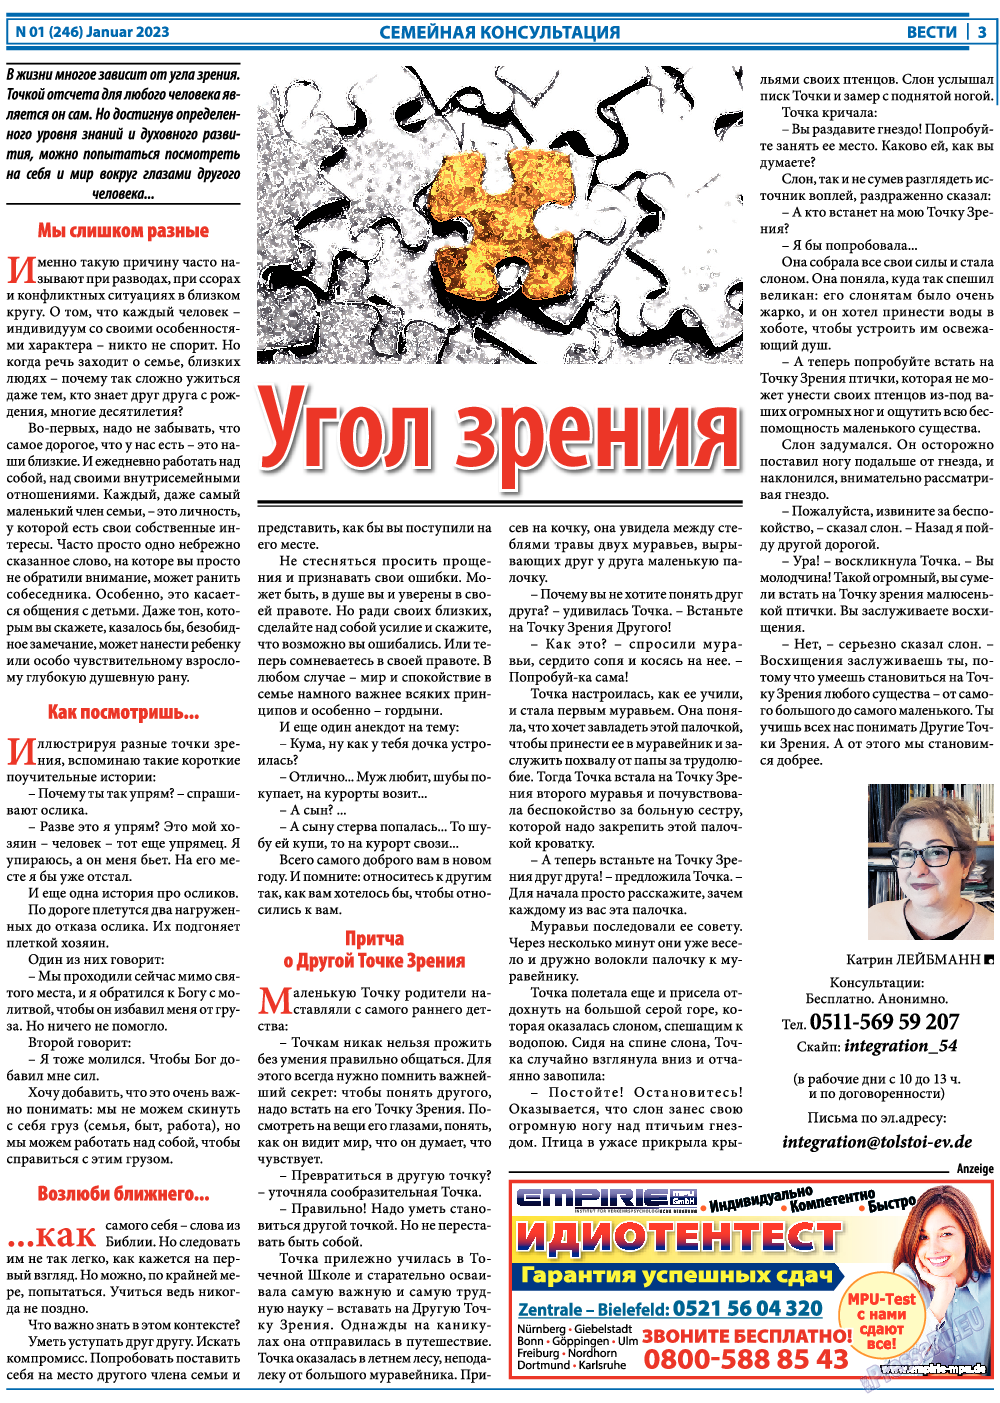 Вести, газета. 2023 №1 стр.3